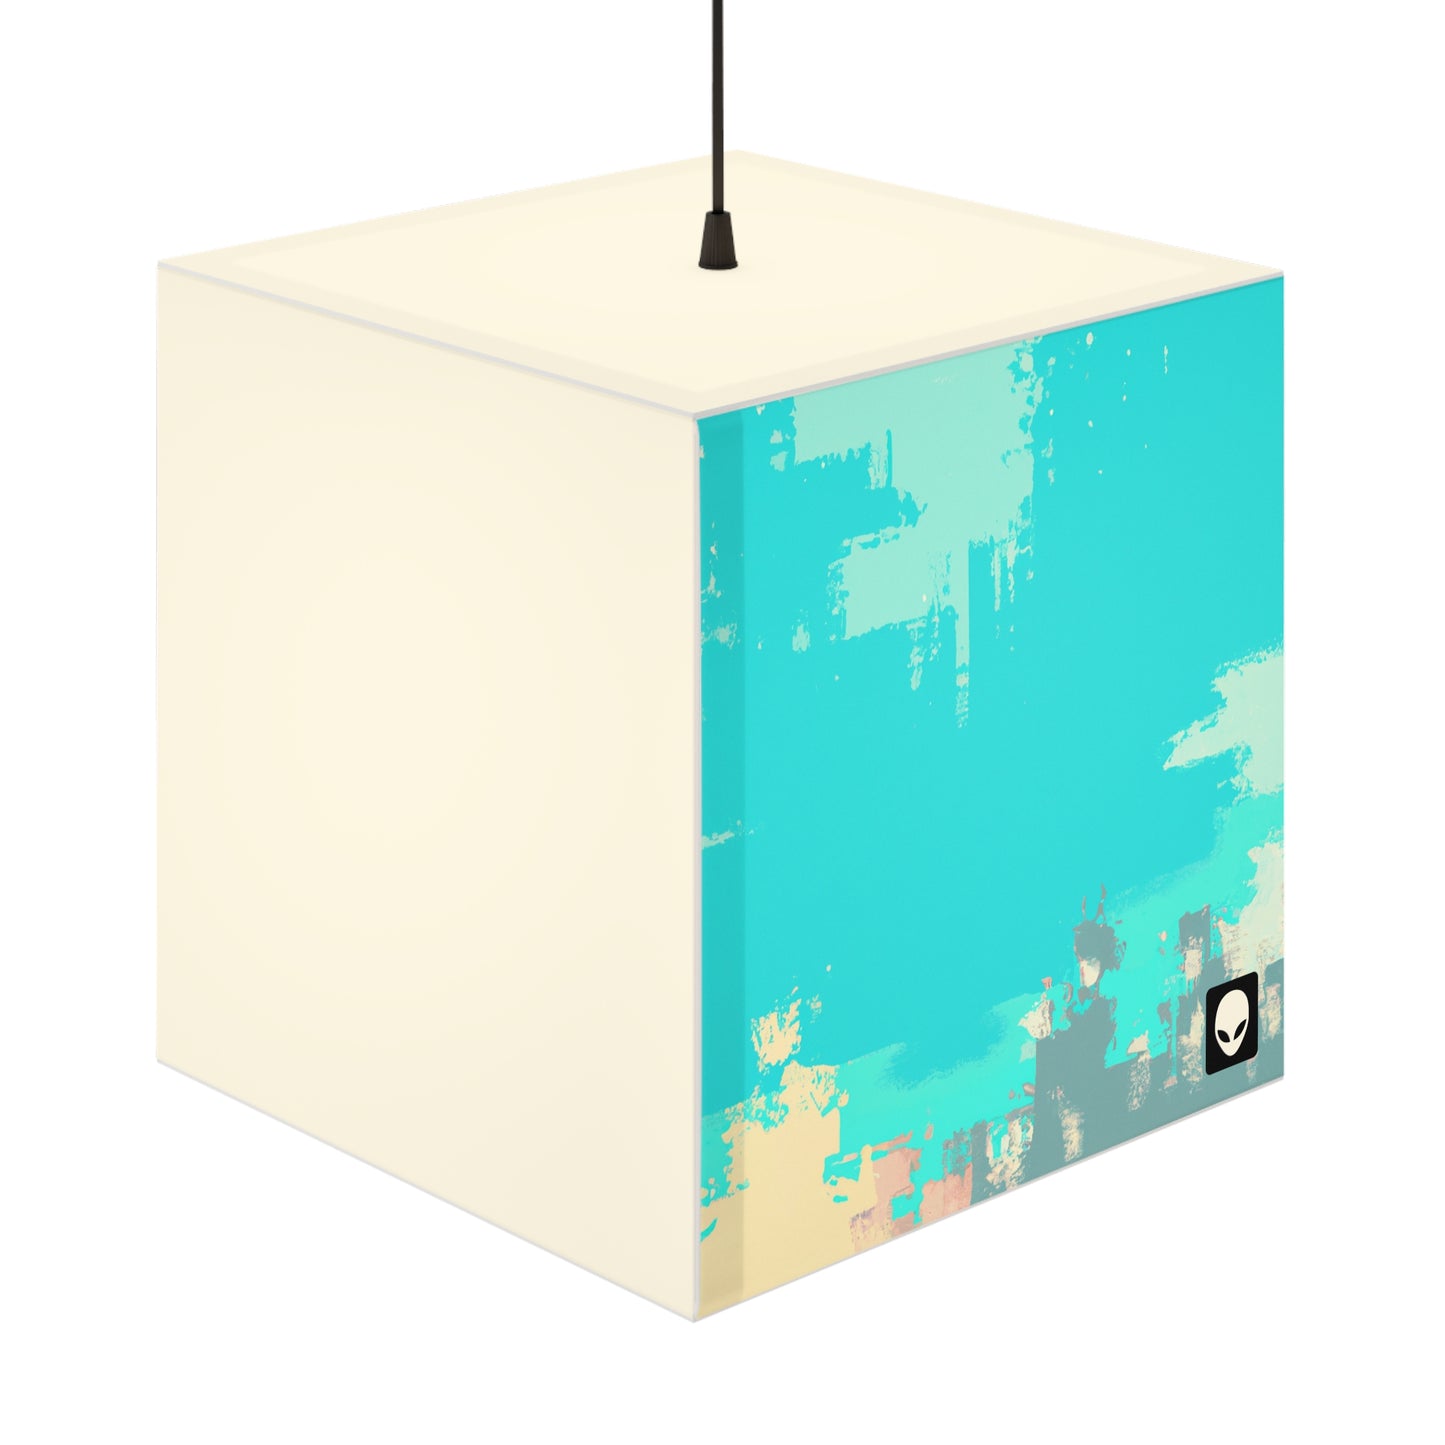 "Un paisaje ventoso: una combinación de tradición y modernidad" - La lámpara Alien Light Cube